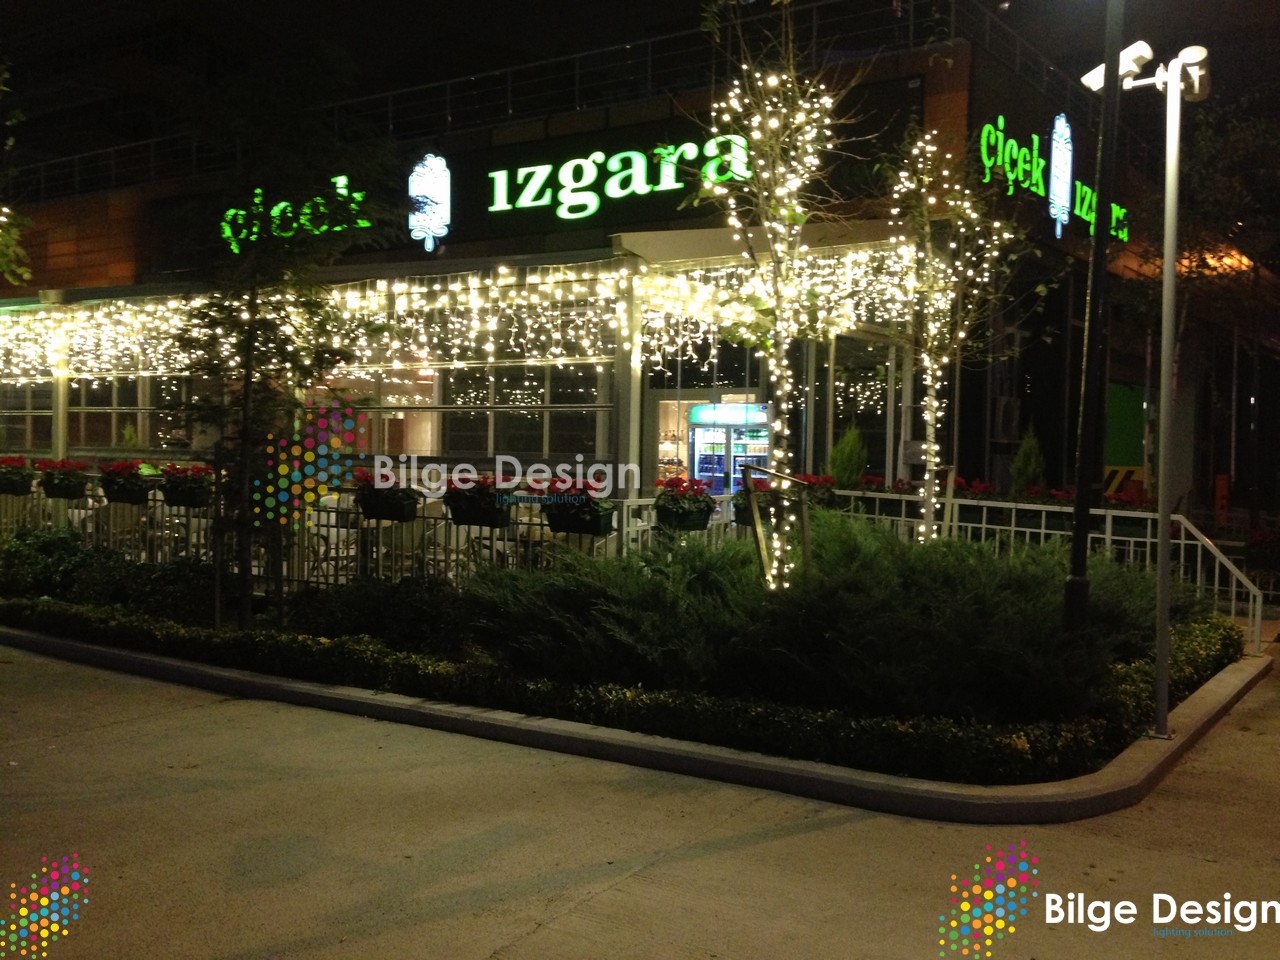 Barutçuoğlu Alışveriş Merkezi Yılbaşı Ağaç Saçak Led Işık Süslemesi - Kastamonu